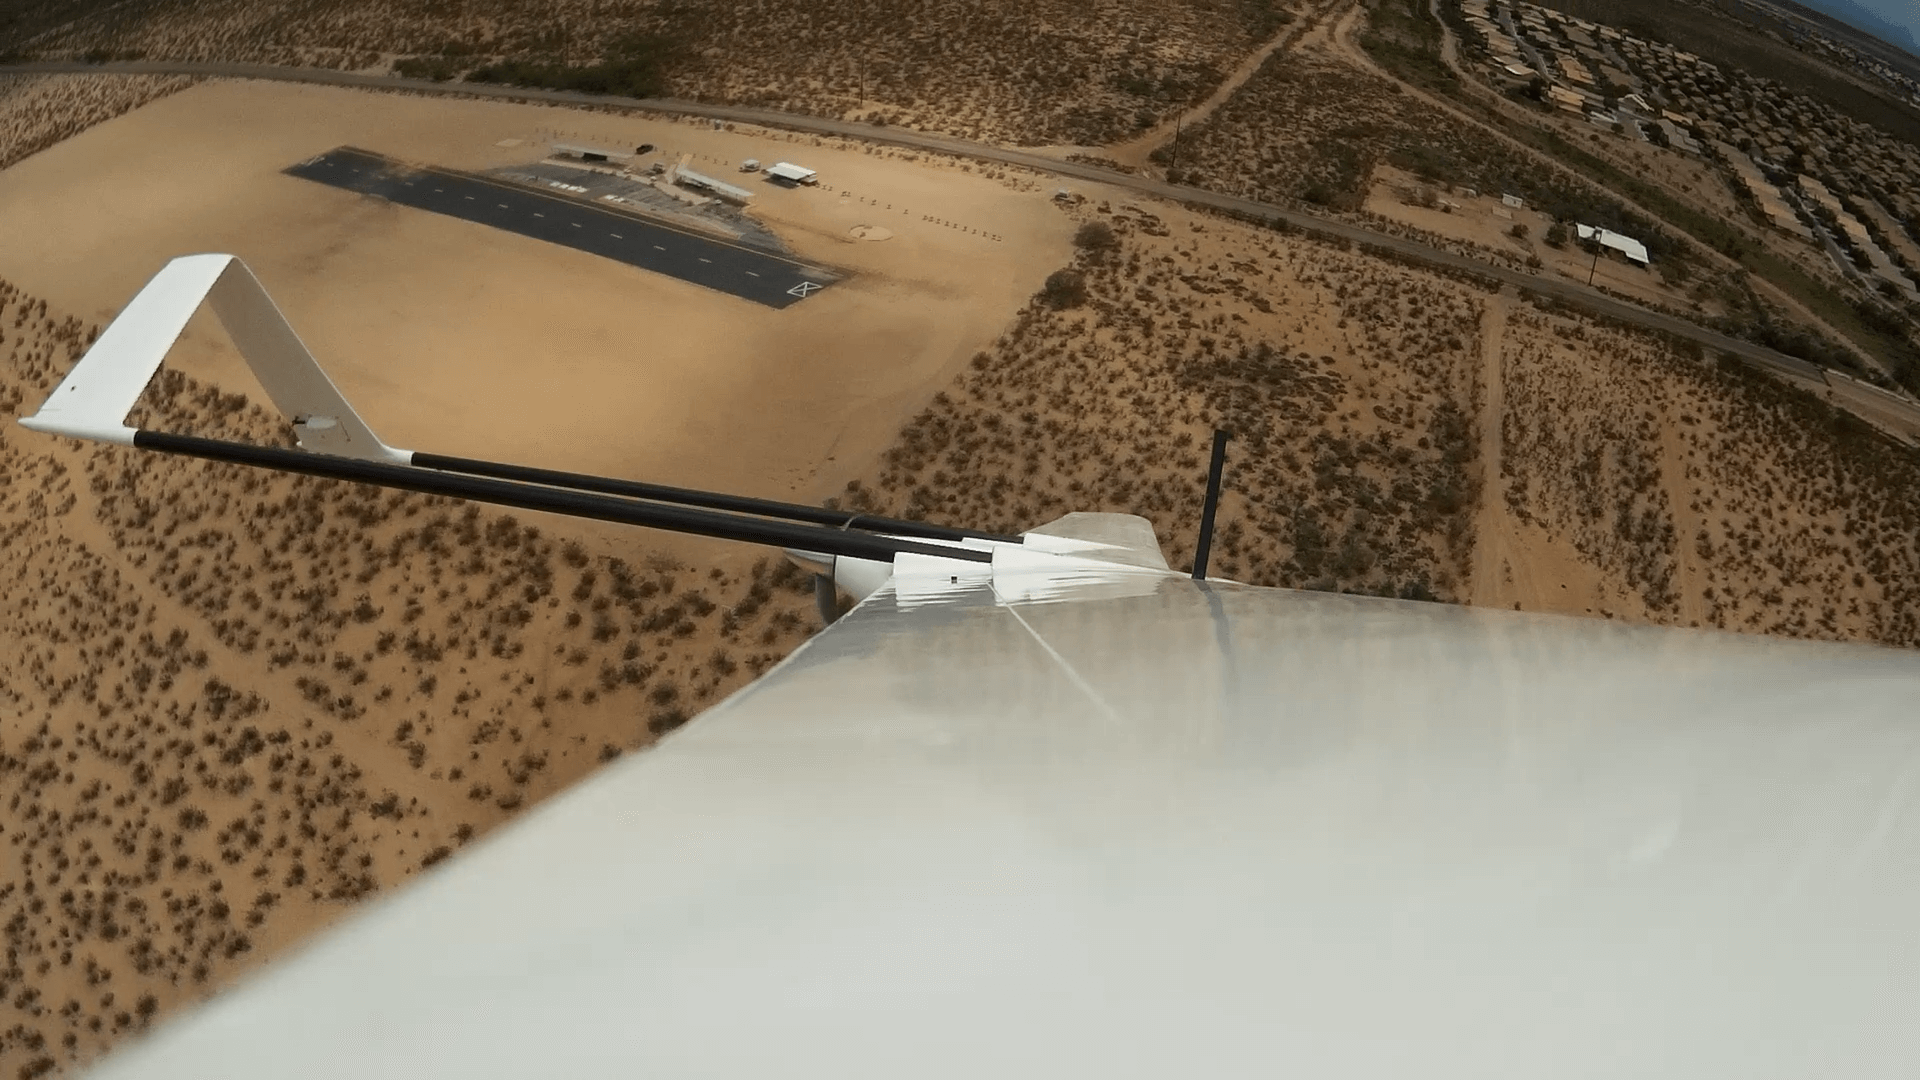 Albatross-UAV-2 Long-Range UAV Maker Releases Upgrade to Video Streaming Device